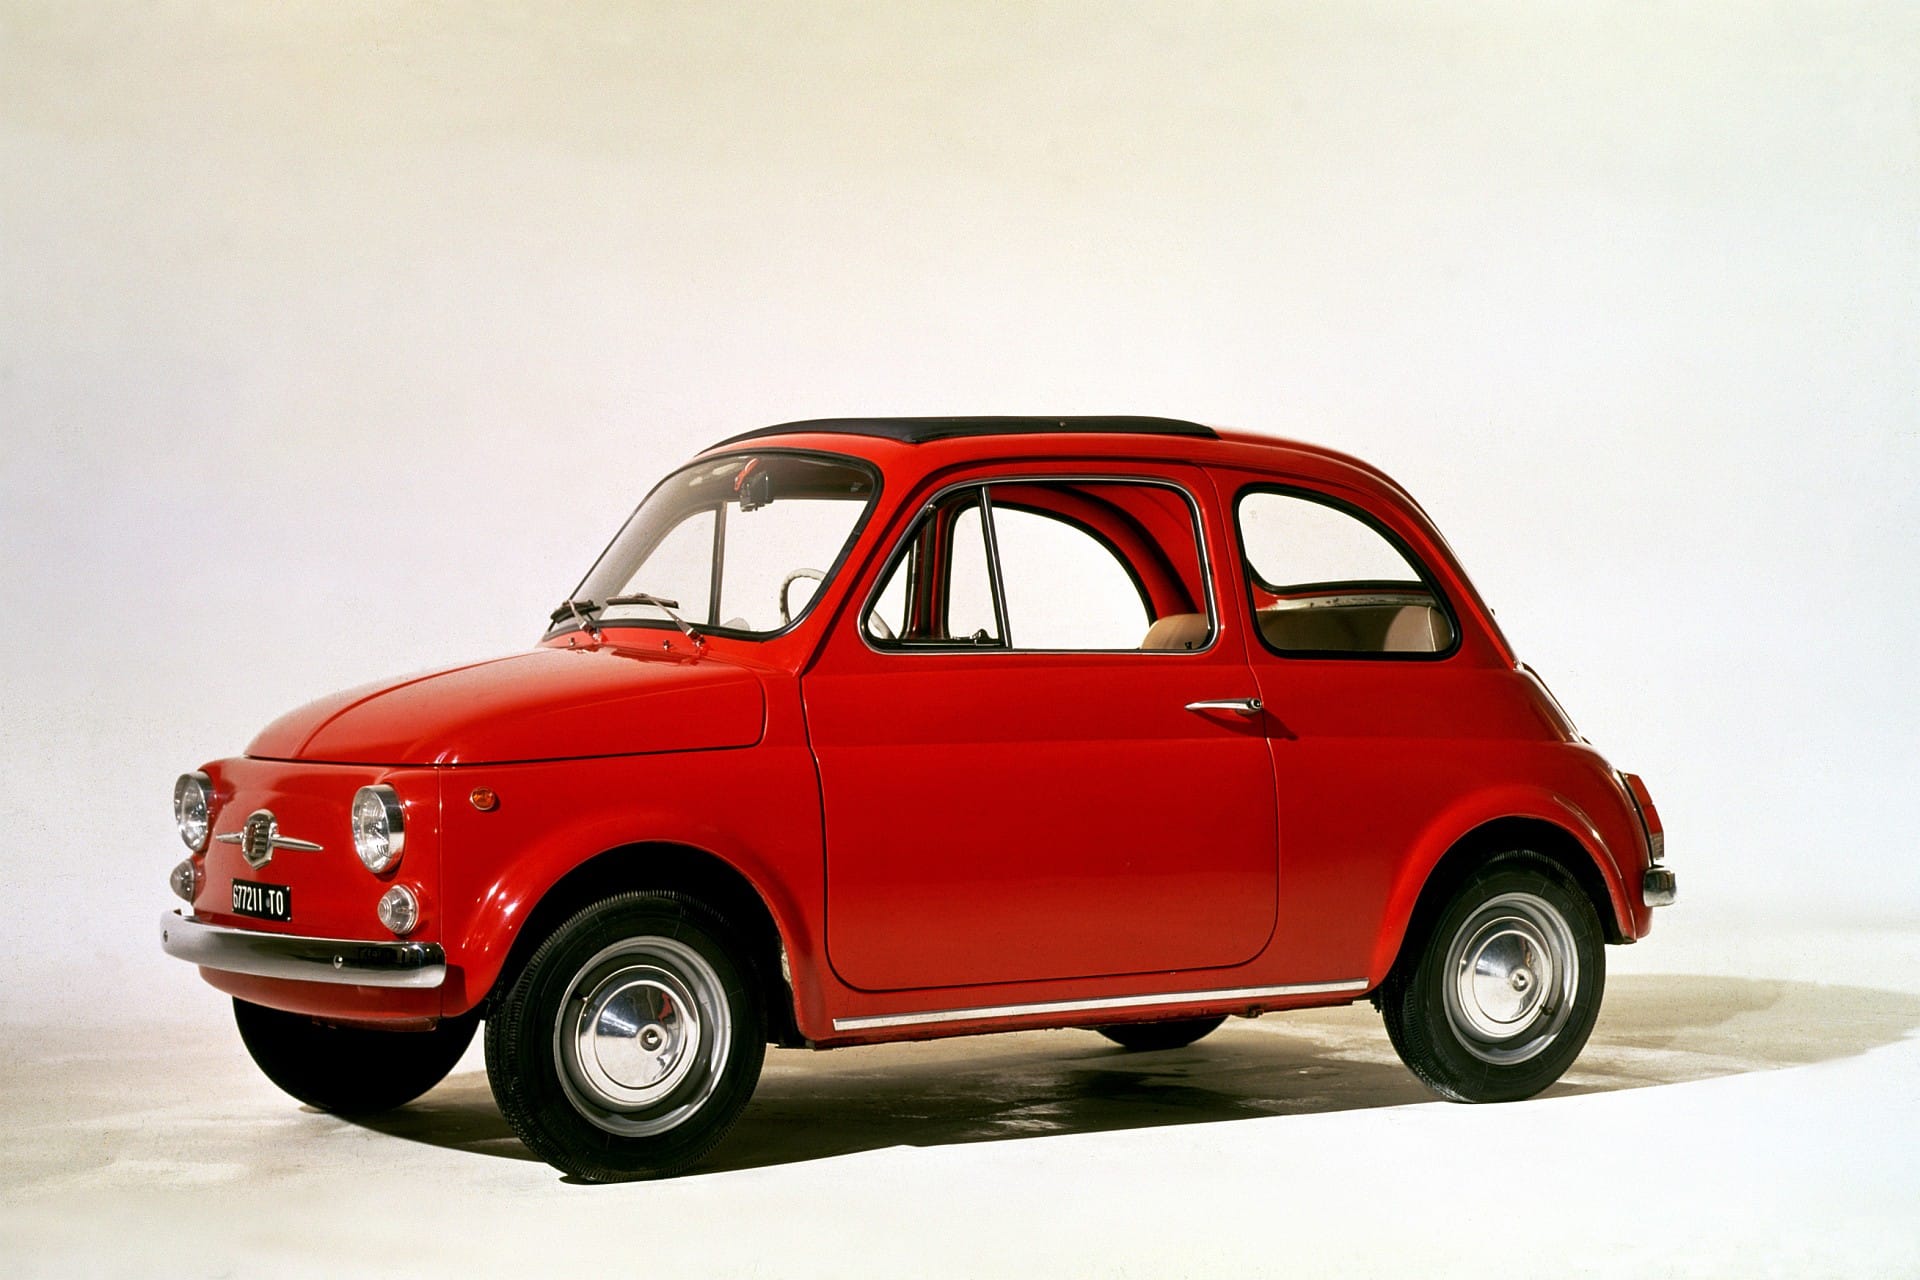 Einst günstig zu haben, inzwischen ein Oldie mit steilem Wertzuwachs. Der gut erhaltene Fiat 500 F wird inzwischen um 15.000 Euro gehandelt.